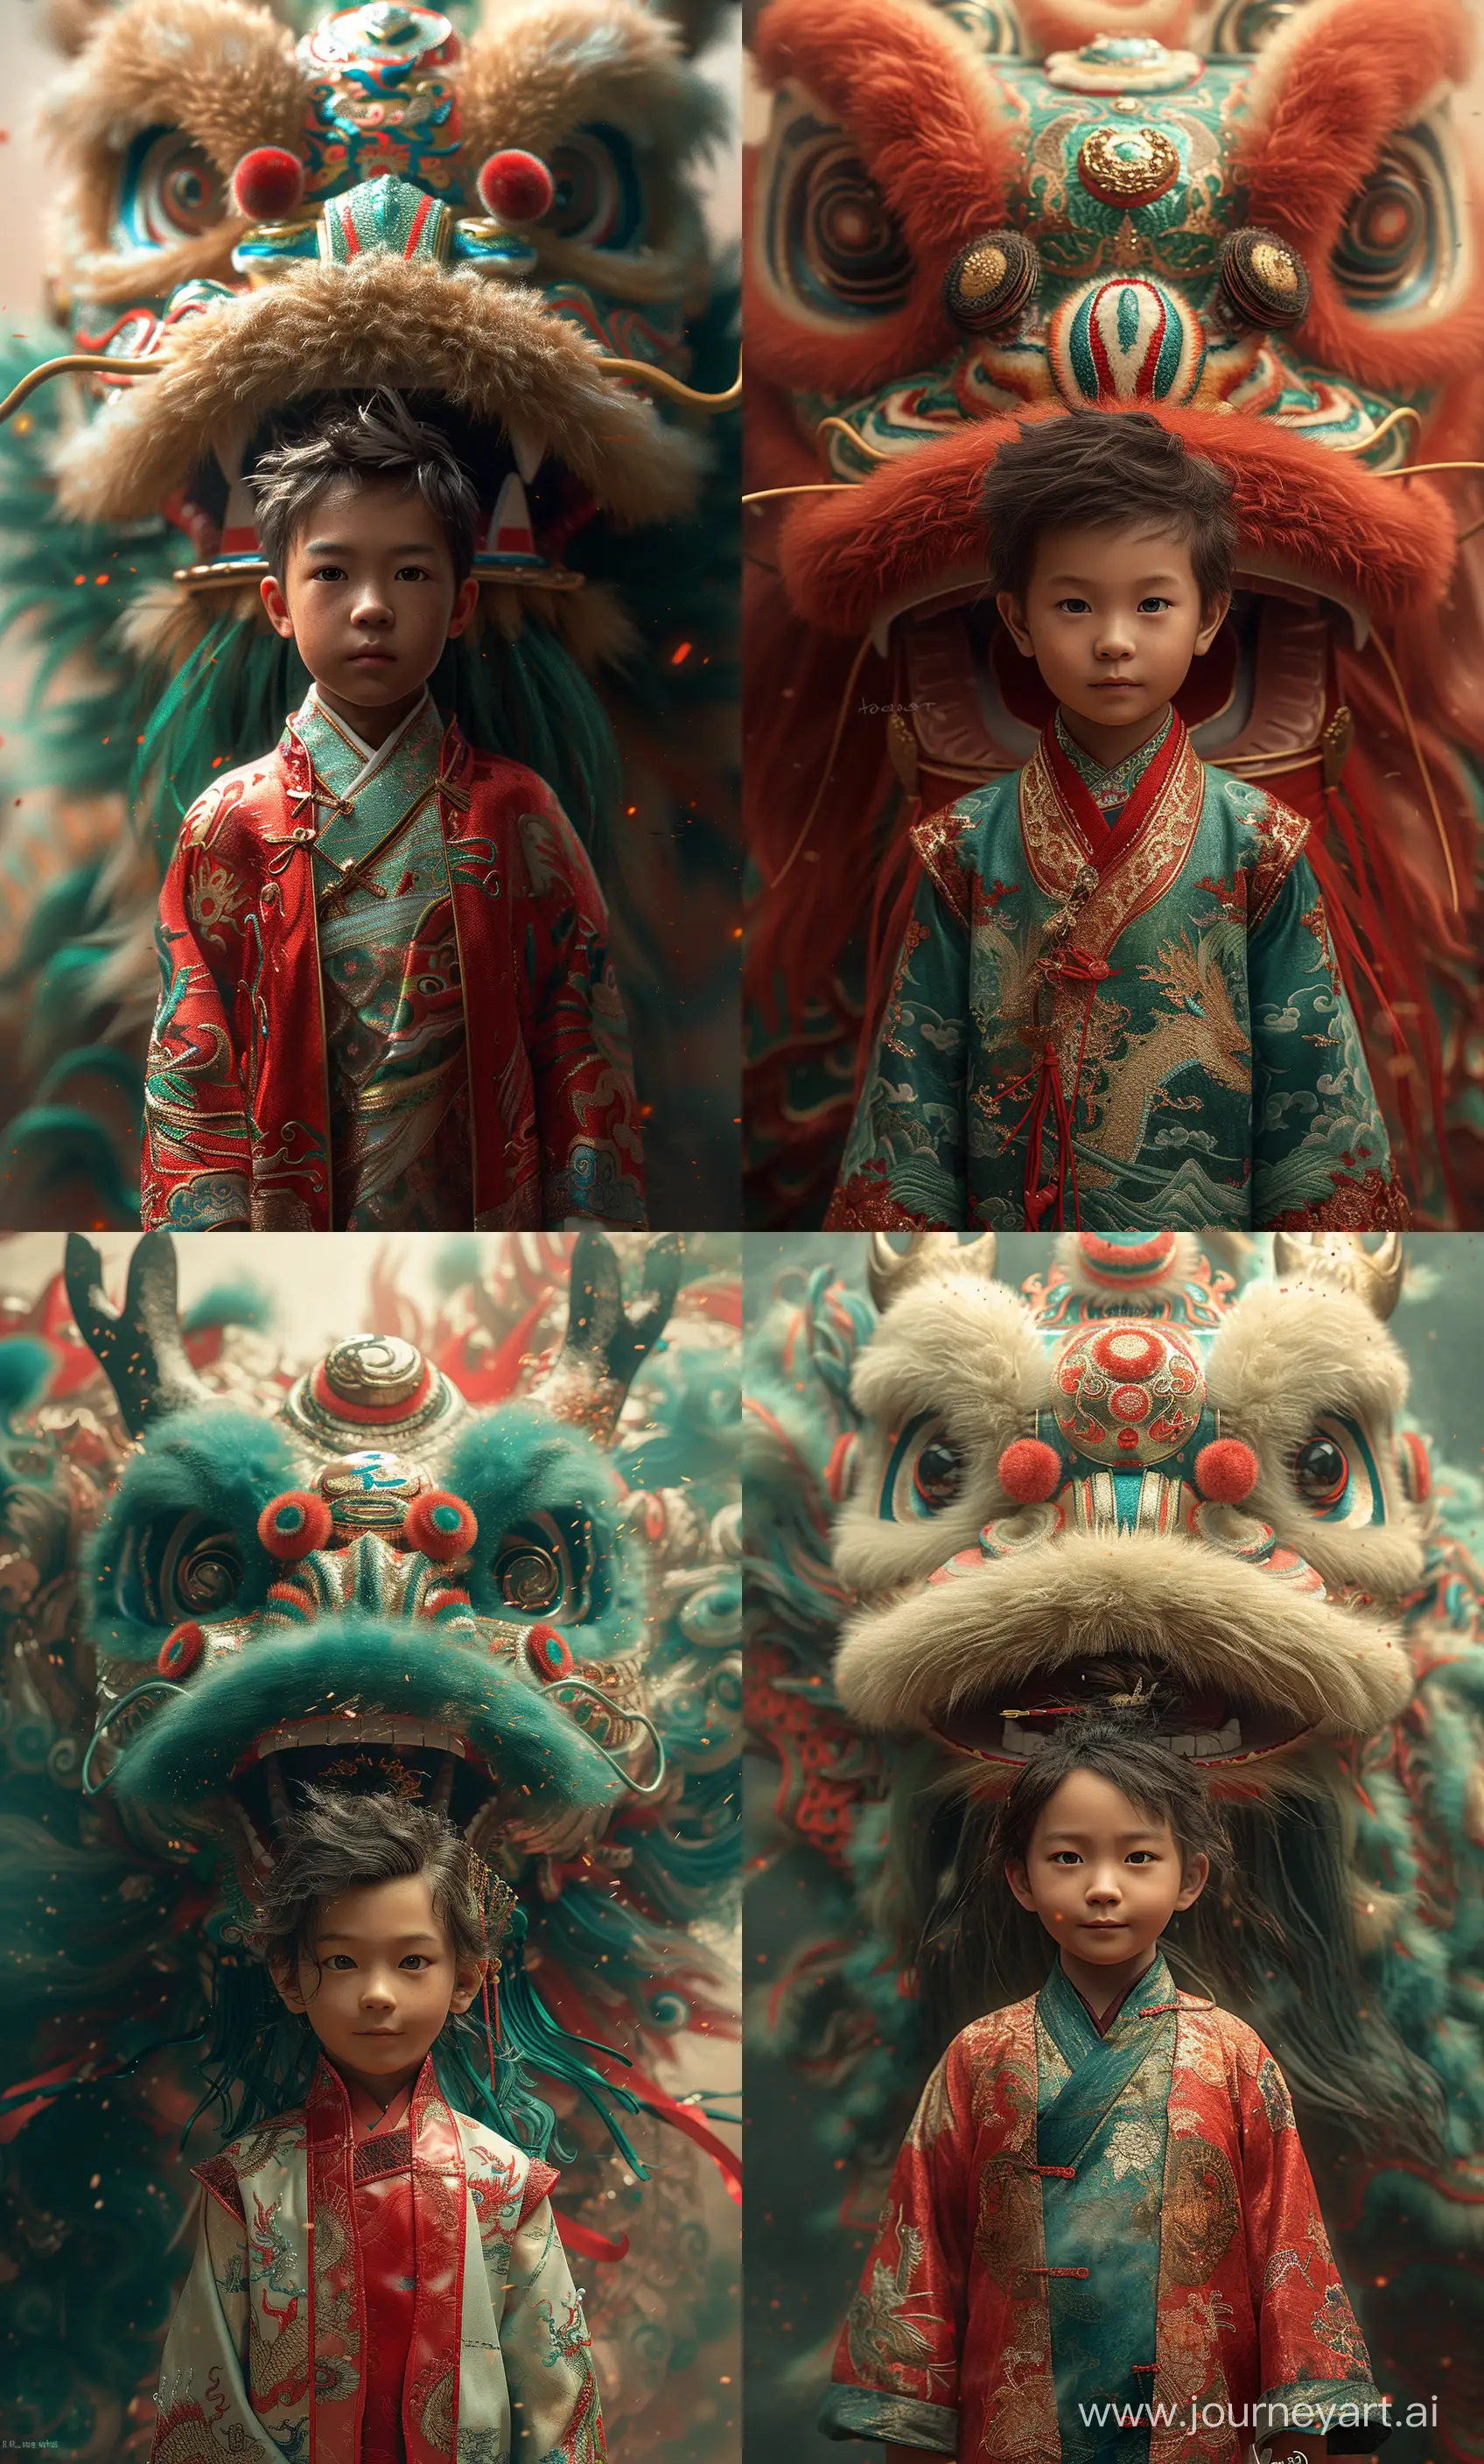 Chinese-Boy-Celebrating-Lunar-New-Year-with-a-Joyful-Dragon-Dance